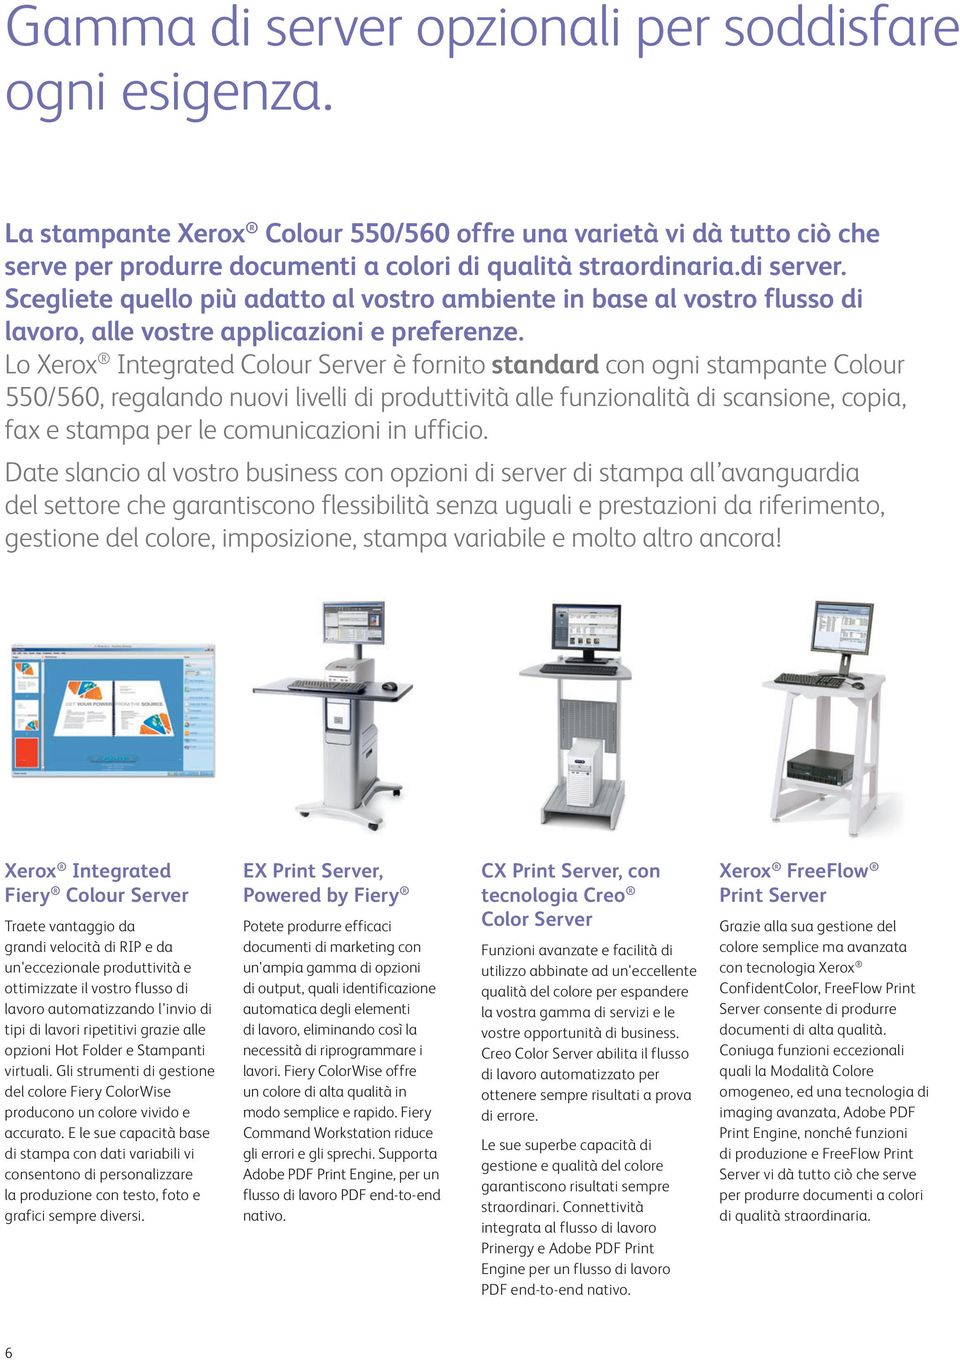 Lo Xerox Integrated Colour Server è fornito standard con ogni stampante Colour 550/560, regalando nuovi livelli di produttività alle funzionalità di scansione, copia, fax e stampa per le